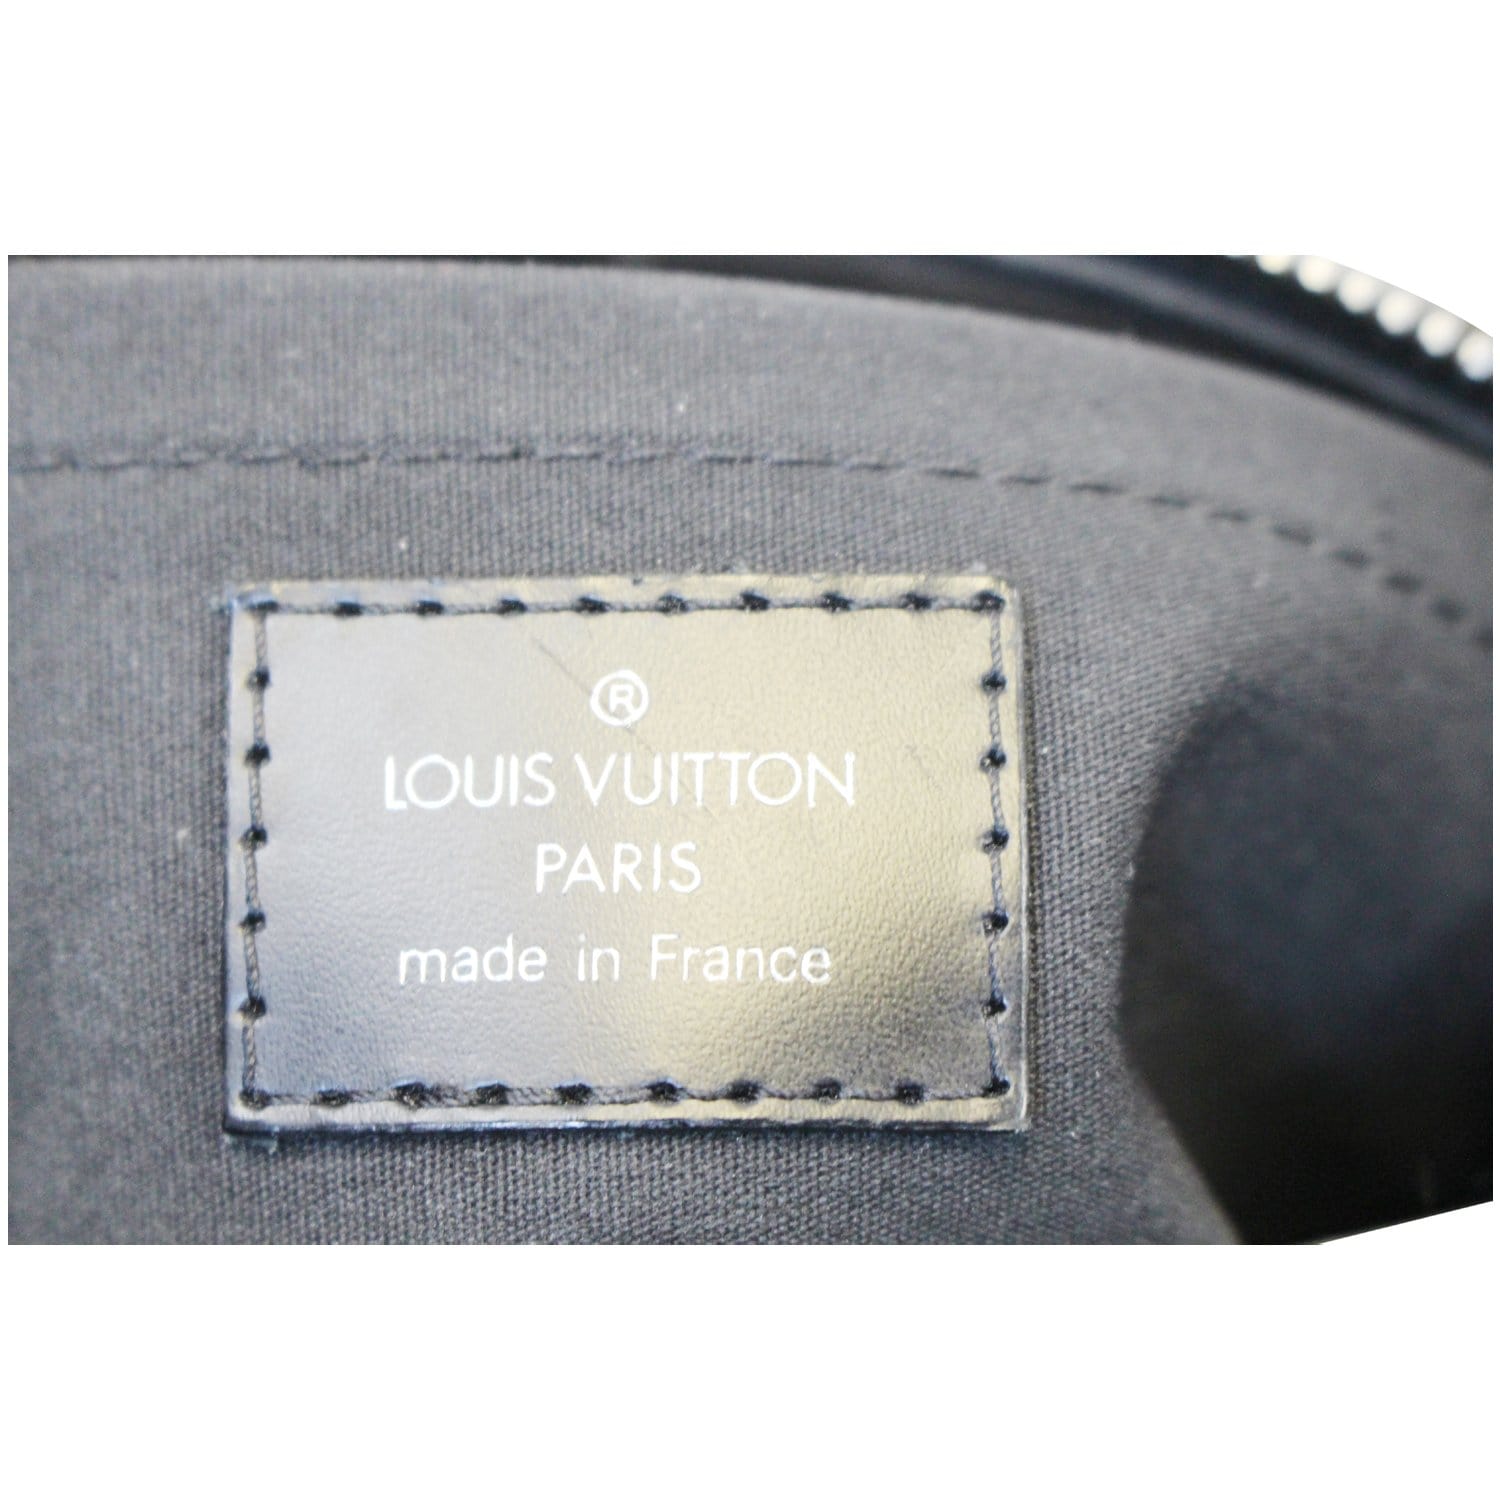 LOUIS VUITTON Shoulder Bag M59282 Noir black Epi Leather Epi Turen